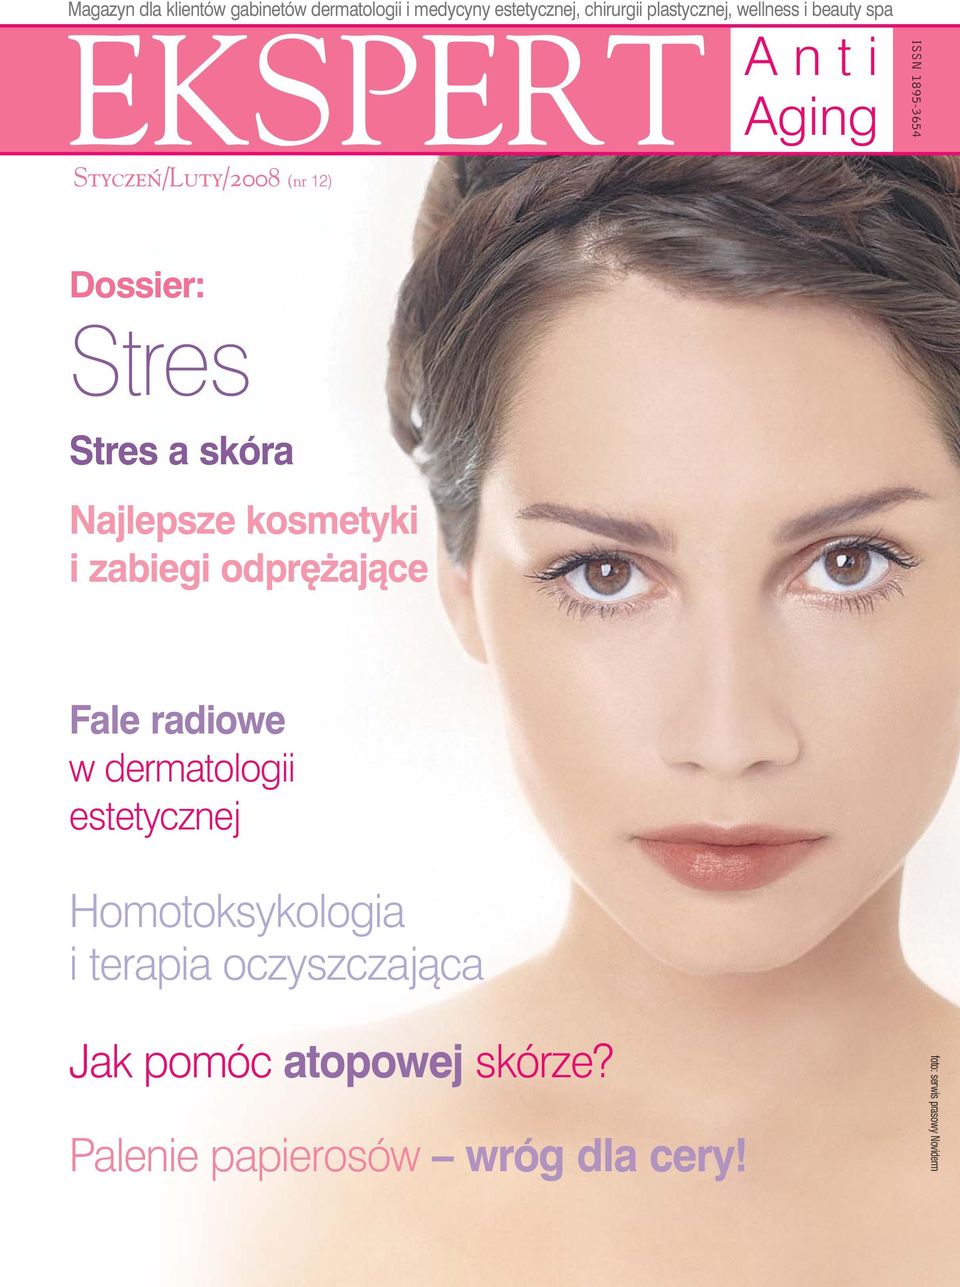 Najlepsze kosmetyki i zabiegi odpr ajàce Fale radiowe w dermatologii estetycznej Homotoksykologia i